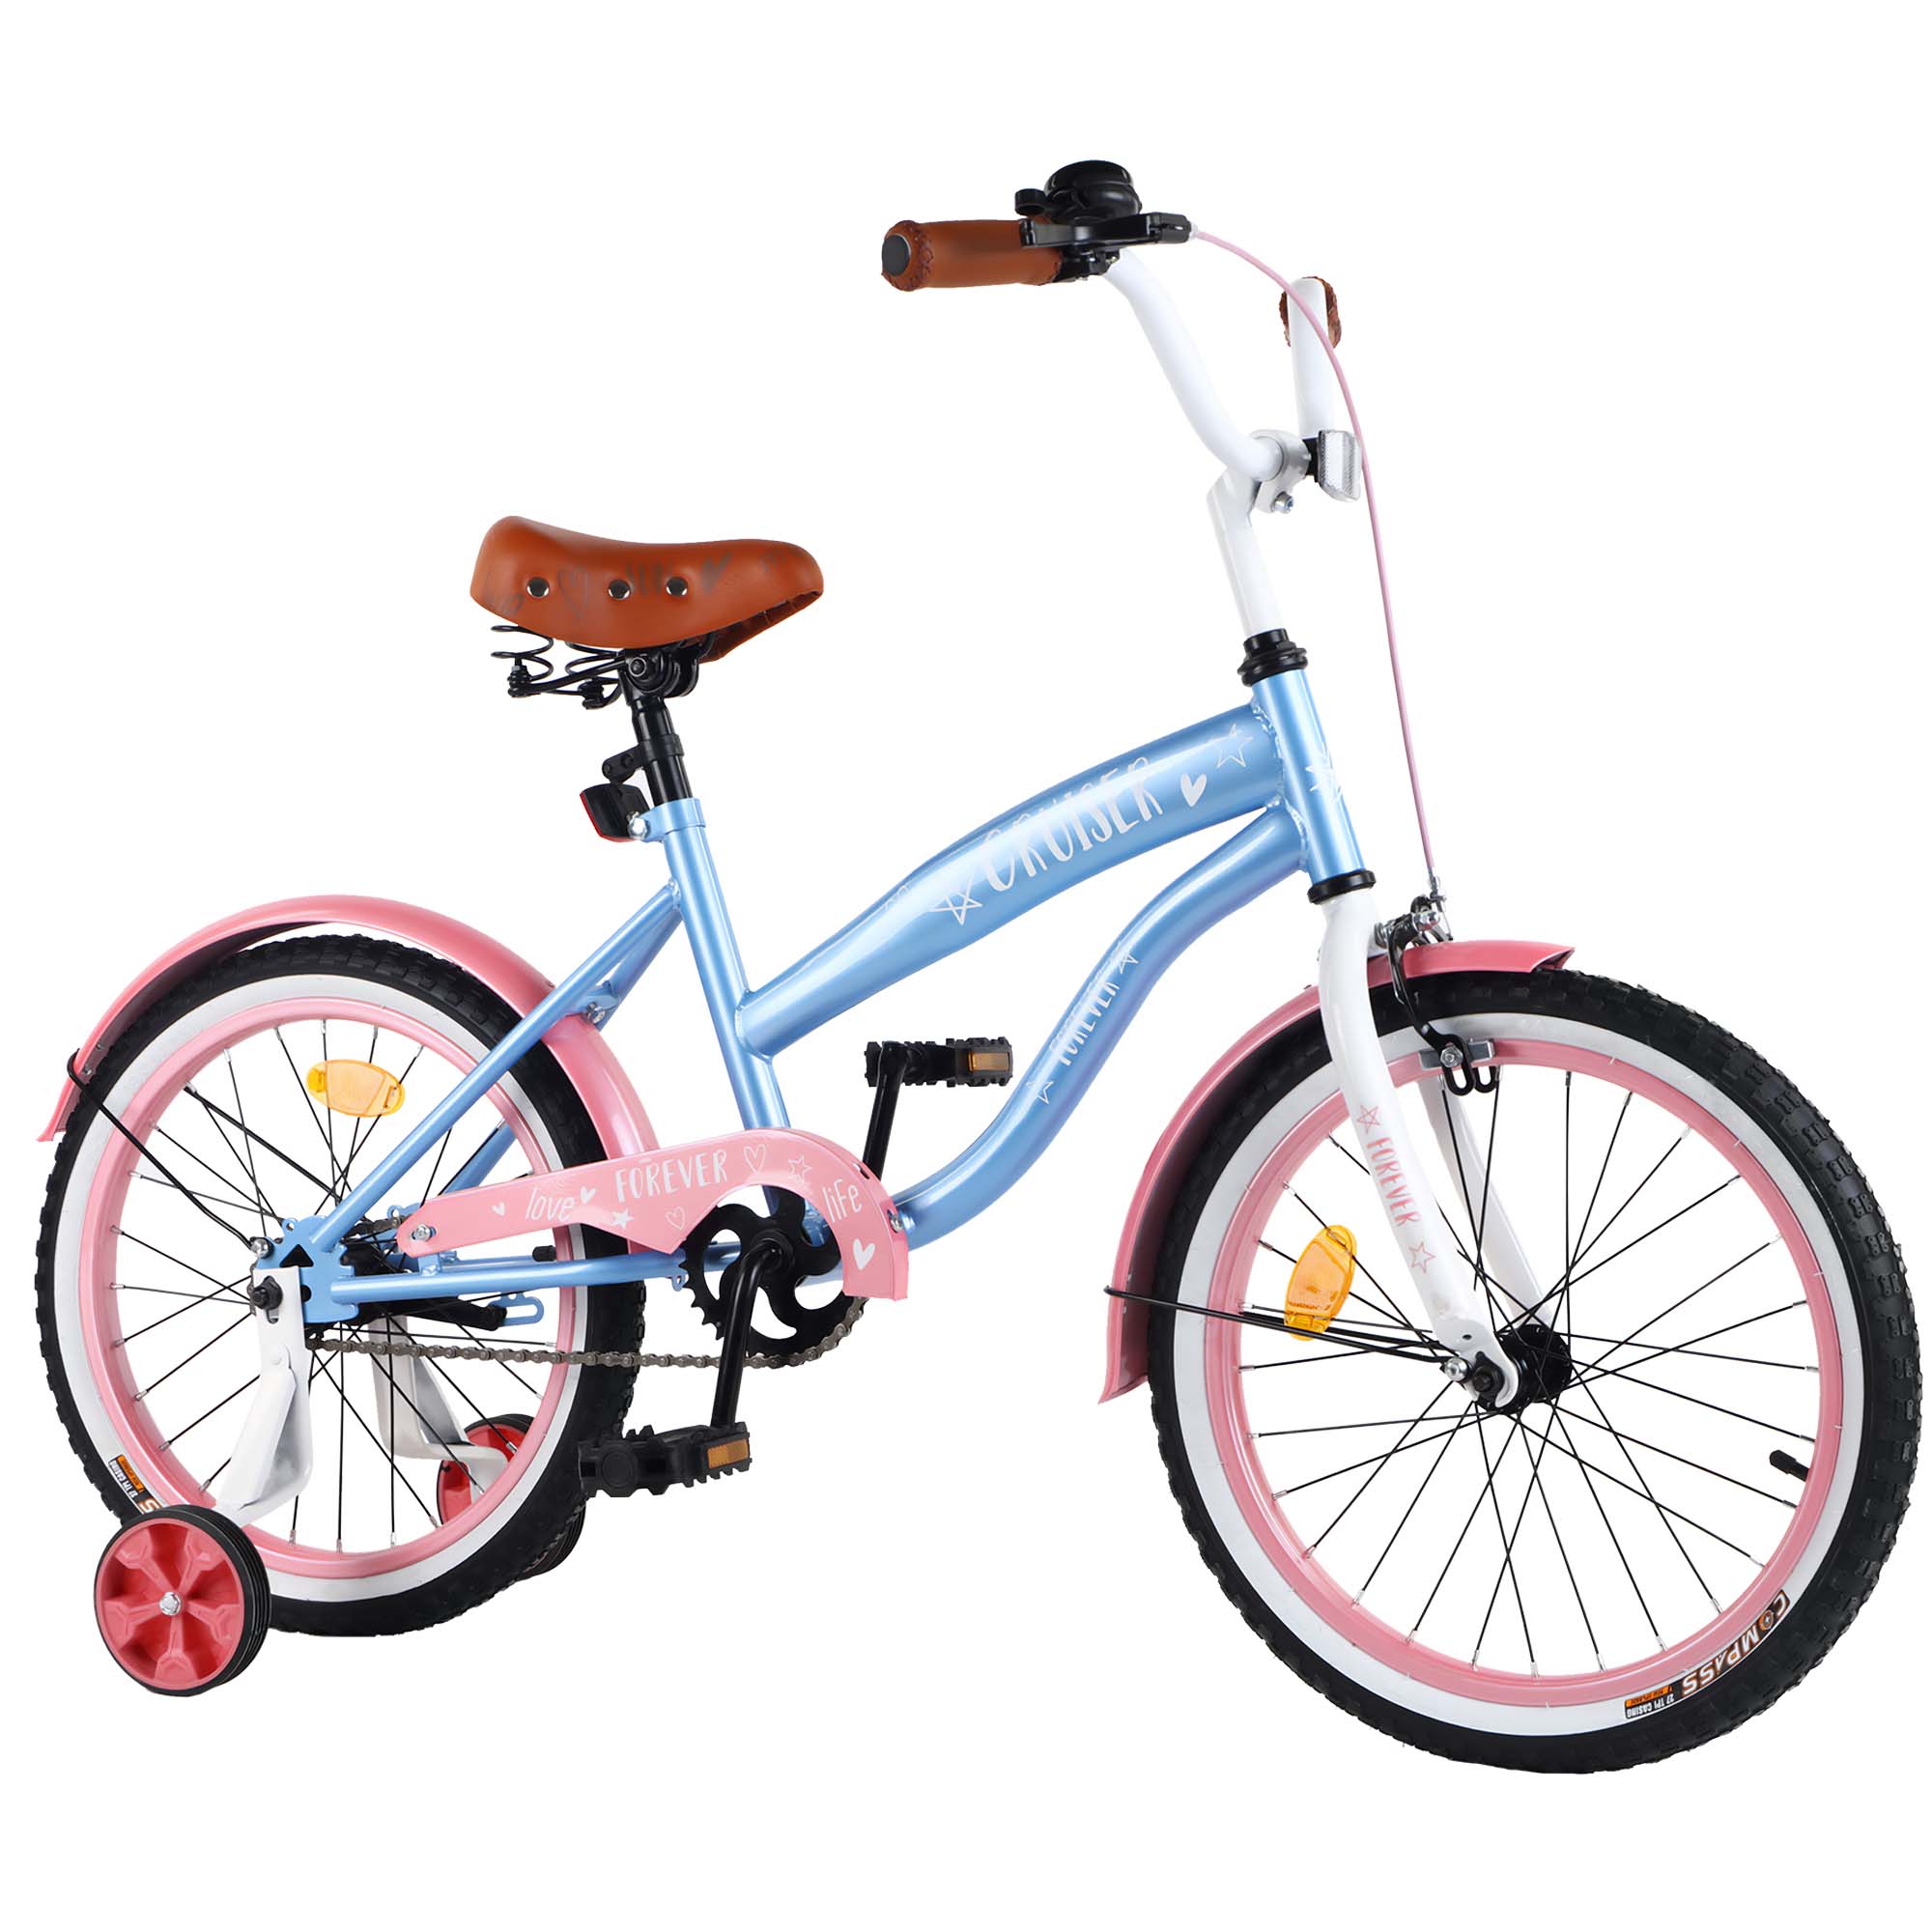 Фотография 1 товарной позиции интернет-магазина детских игрушек www.smarttoys.com.ua Велосипед CRUISER 18' T-21837 blue+pink /1/